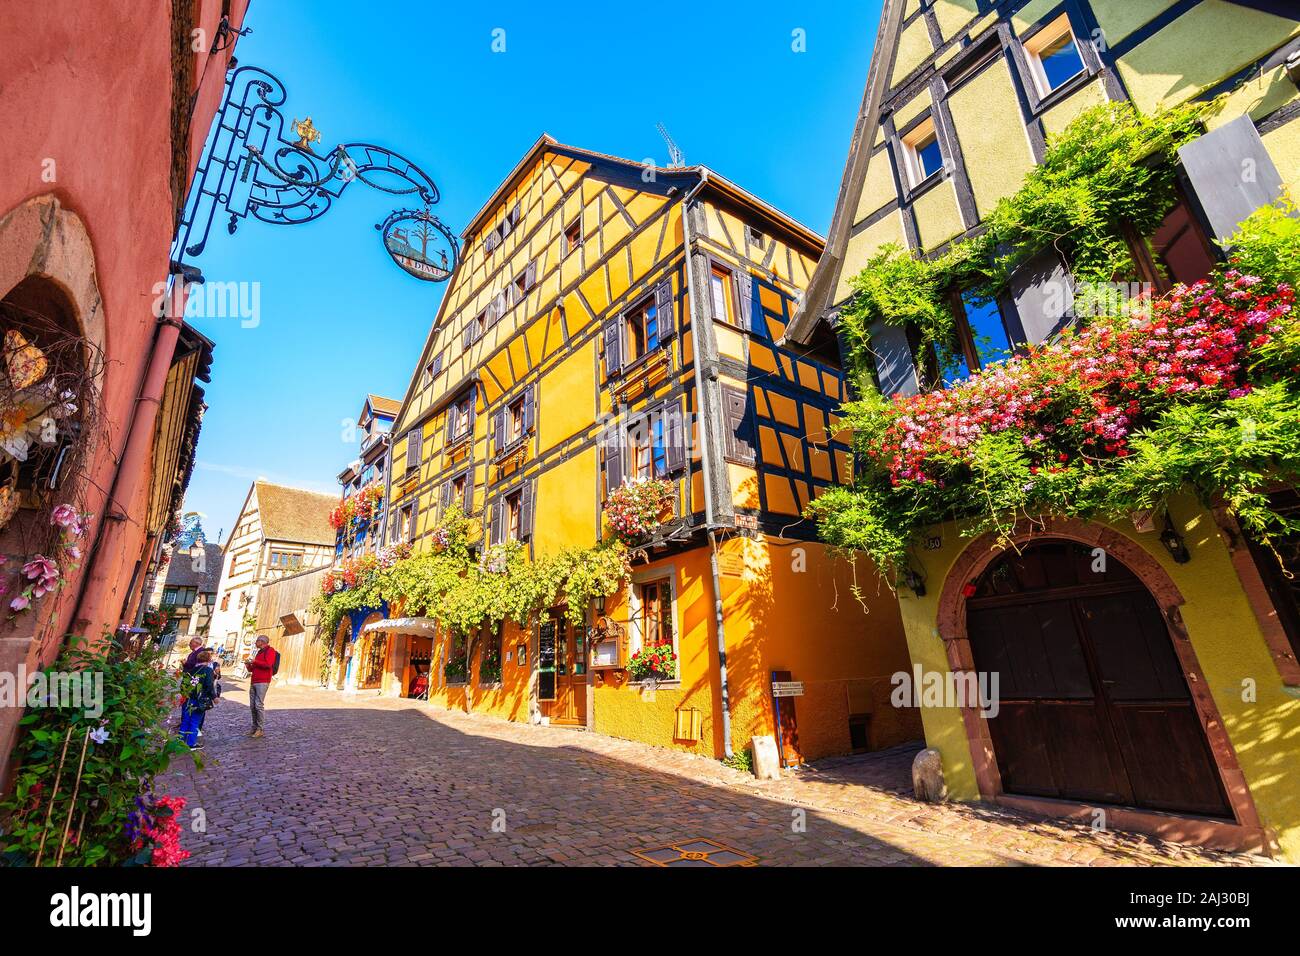 RIQUEWIHR, FRANCE - Sep 18, 2019 : de belles maisons historiques dans la vieille partie du village de Riquewihr qui est situé sur la célèbre route des vins en Alsace Banque D'Images